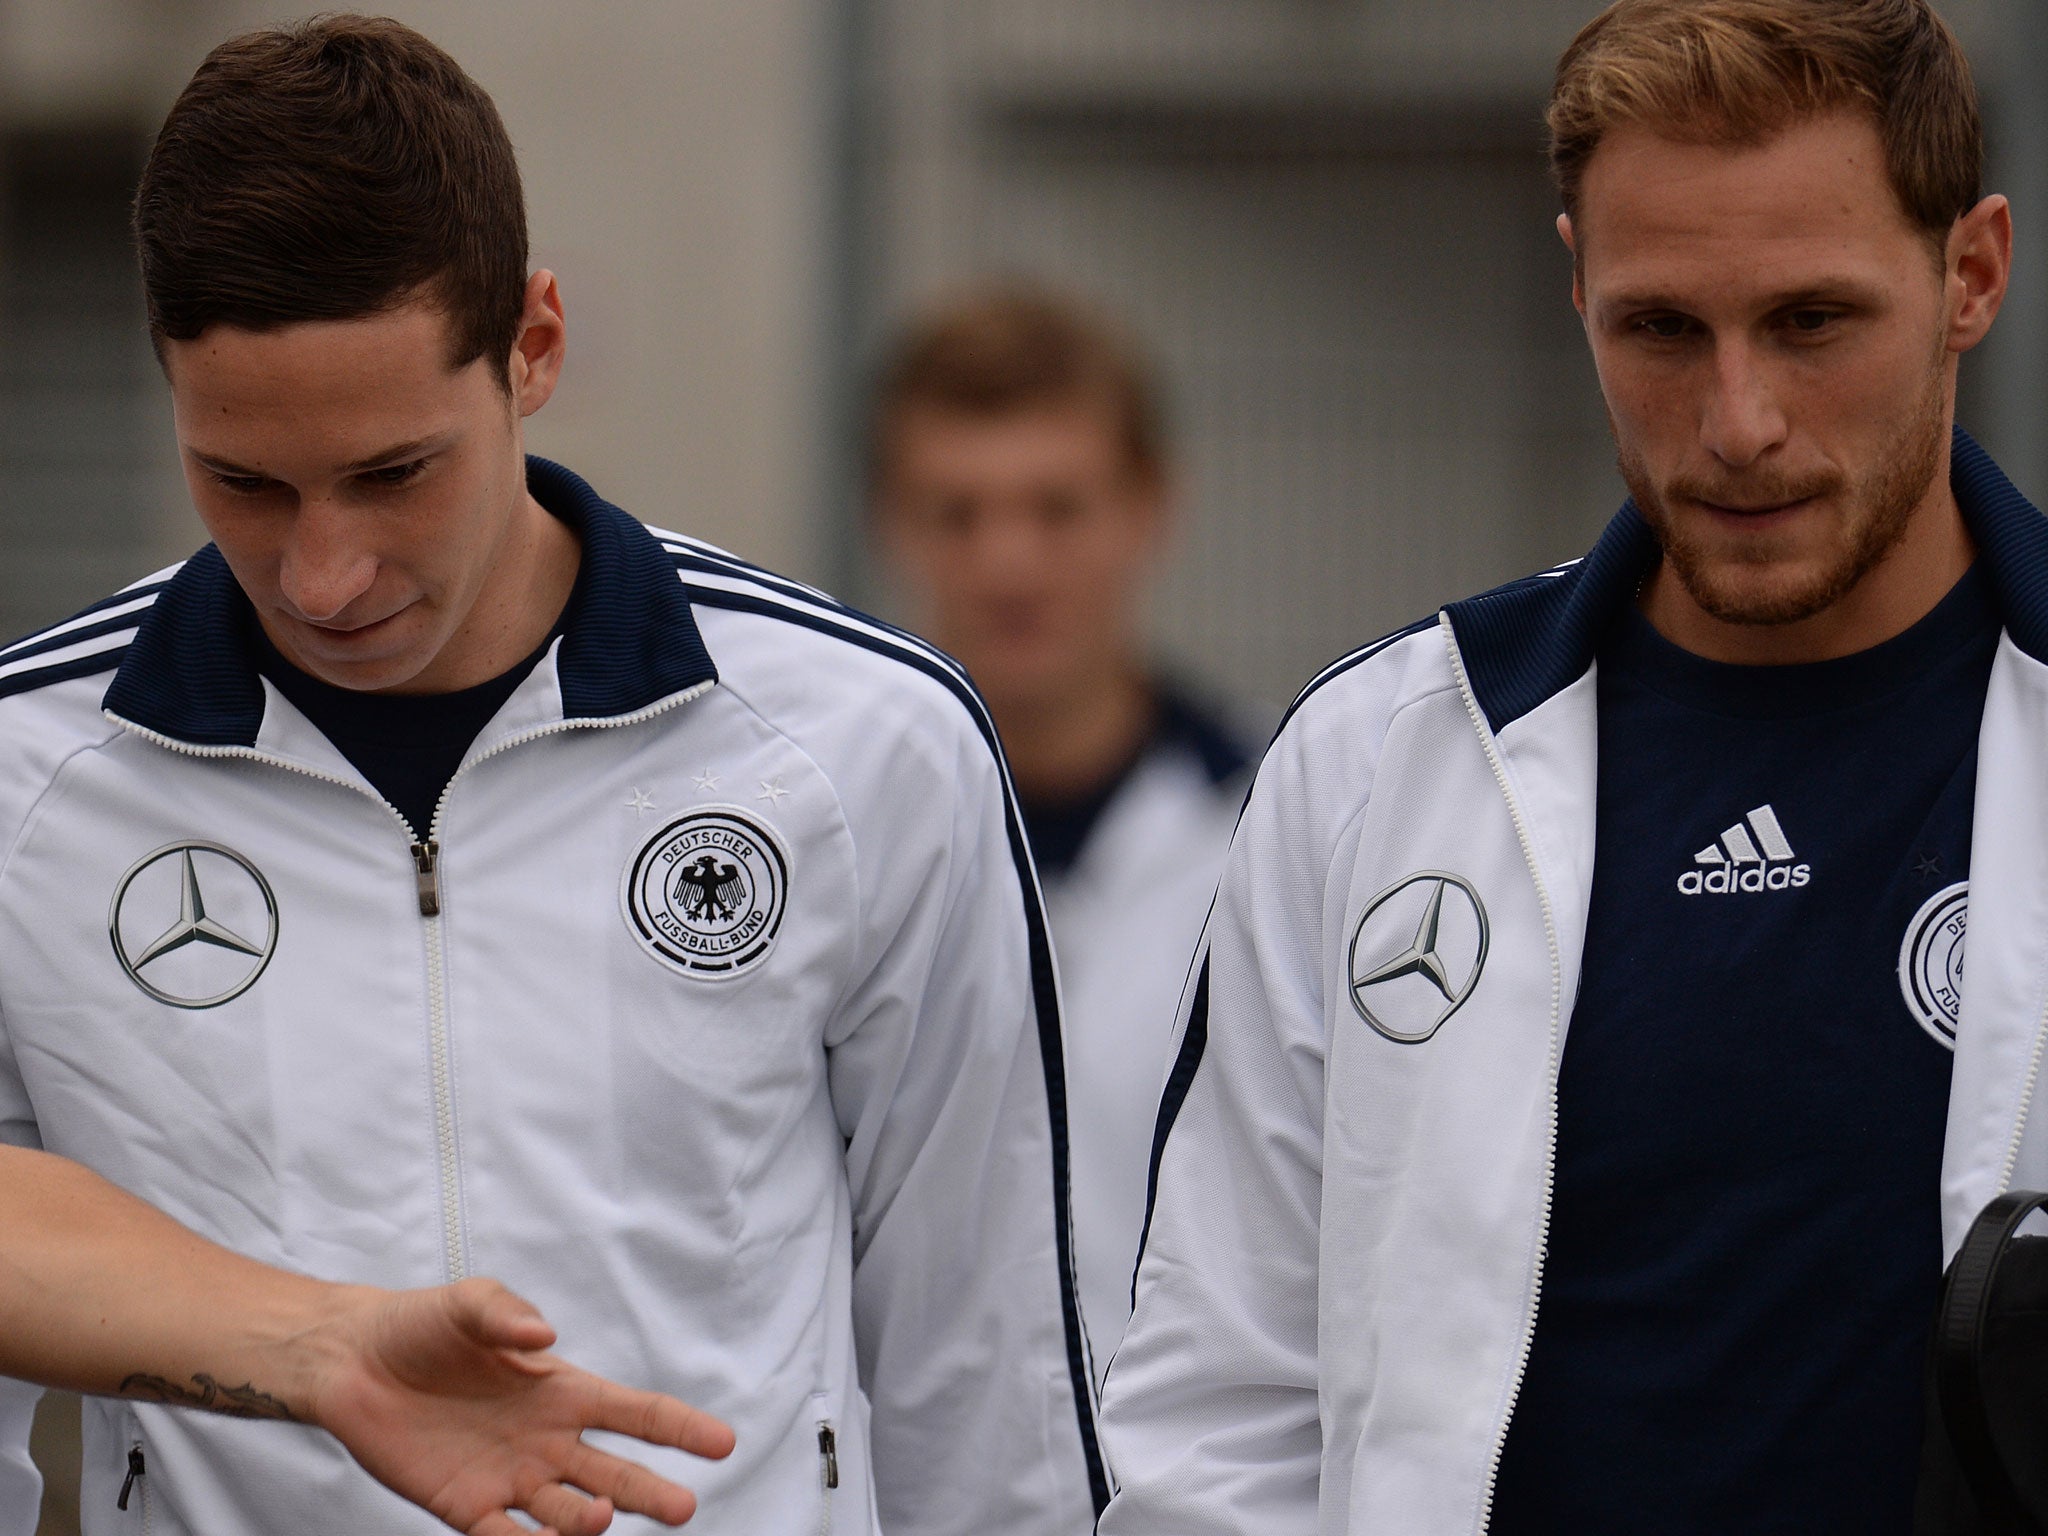 Julian Draxler (left) and Benedikt Hoewedes both play for Schalke 04 in the Bundesliga